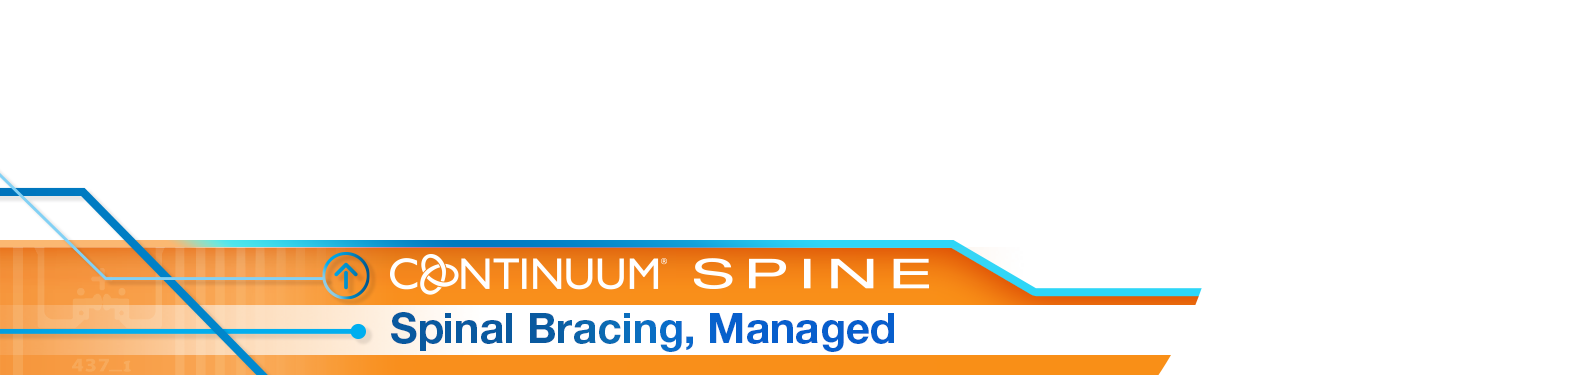 Continuum Spine